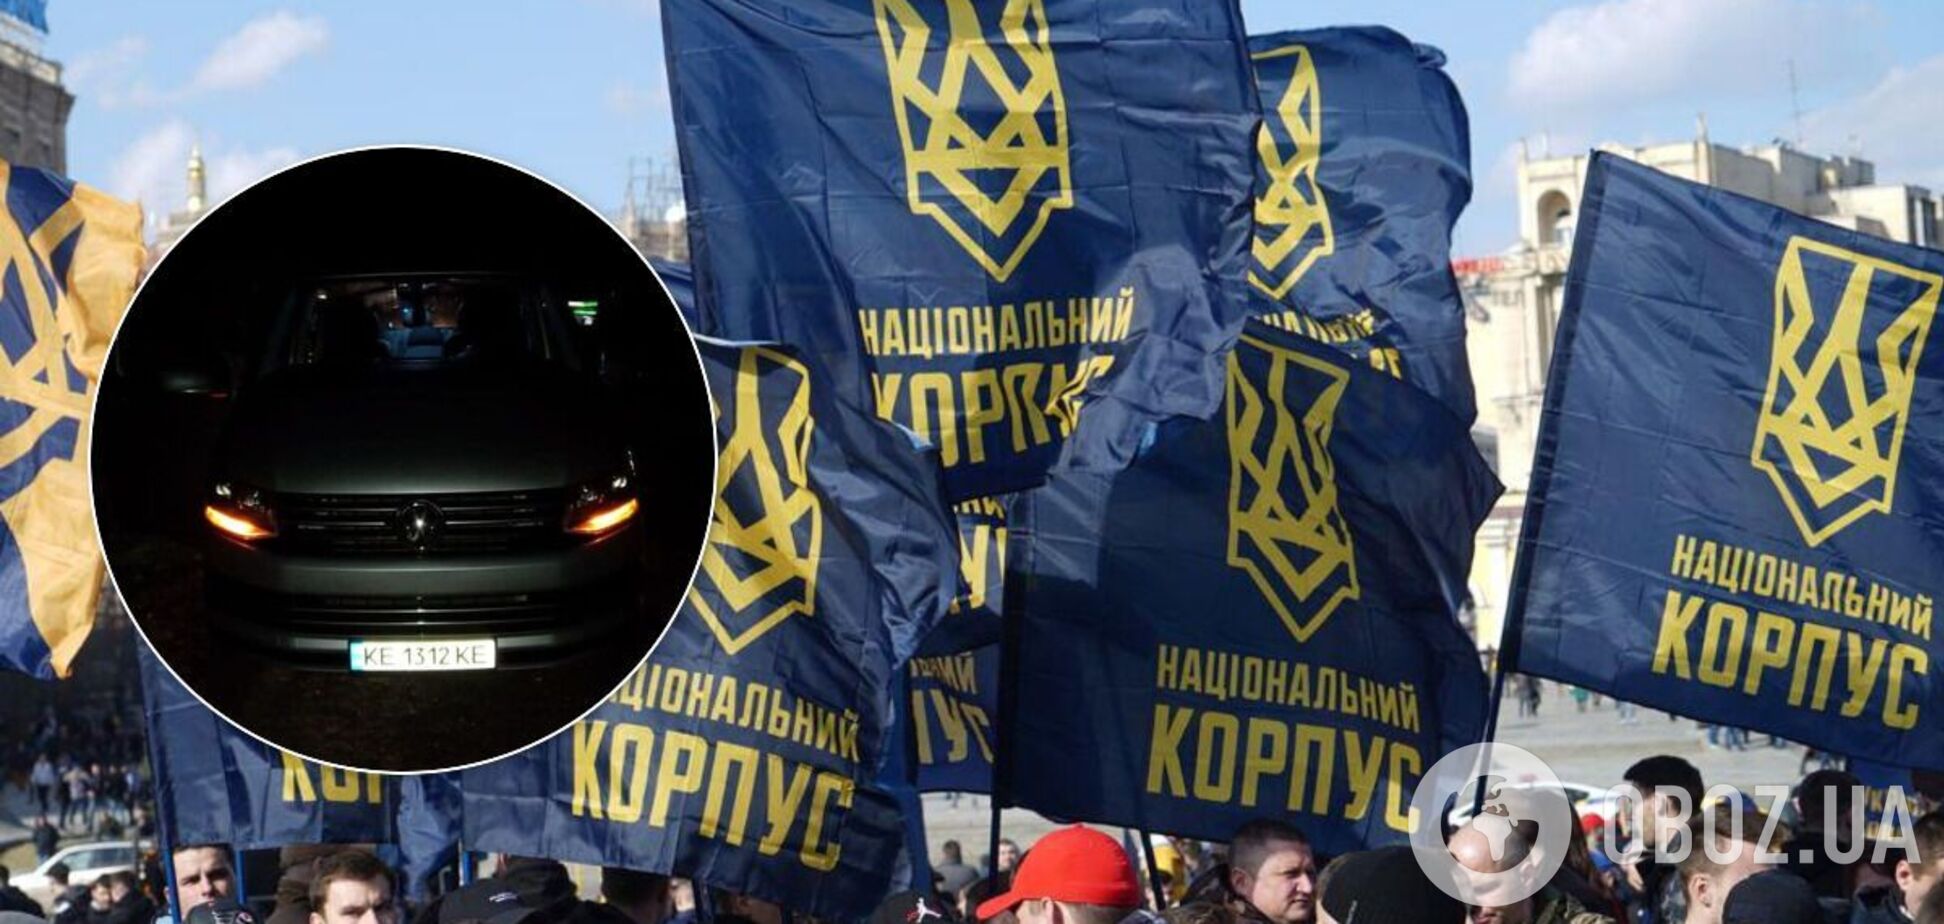 СМИ указали на связь Нацкорпуса с нападением на членов организации 'Патриоты – за жизнь' 